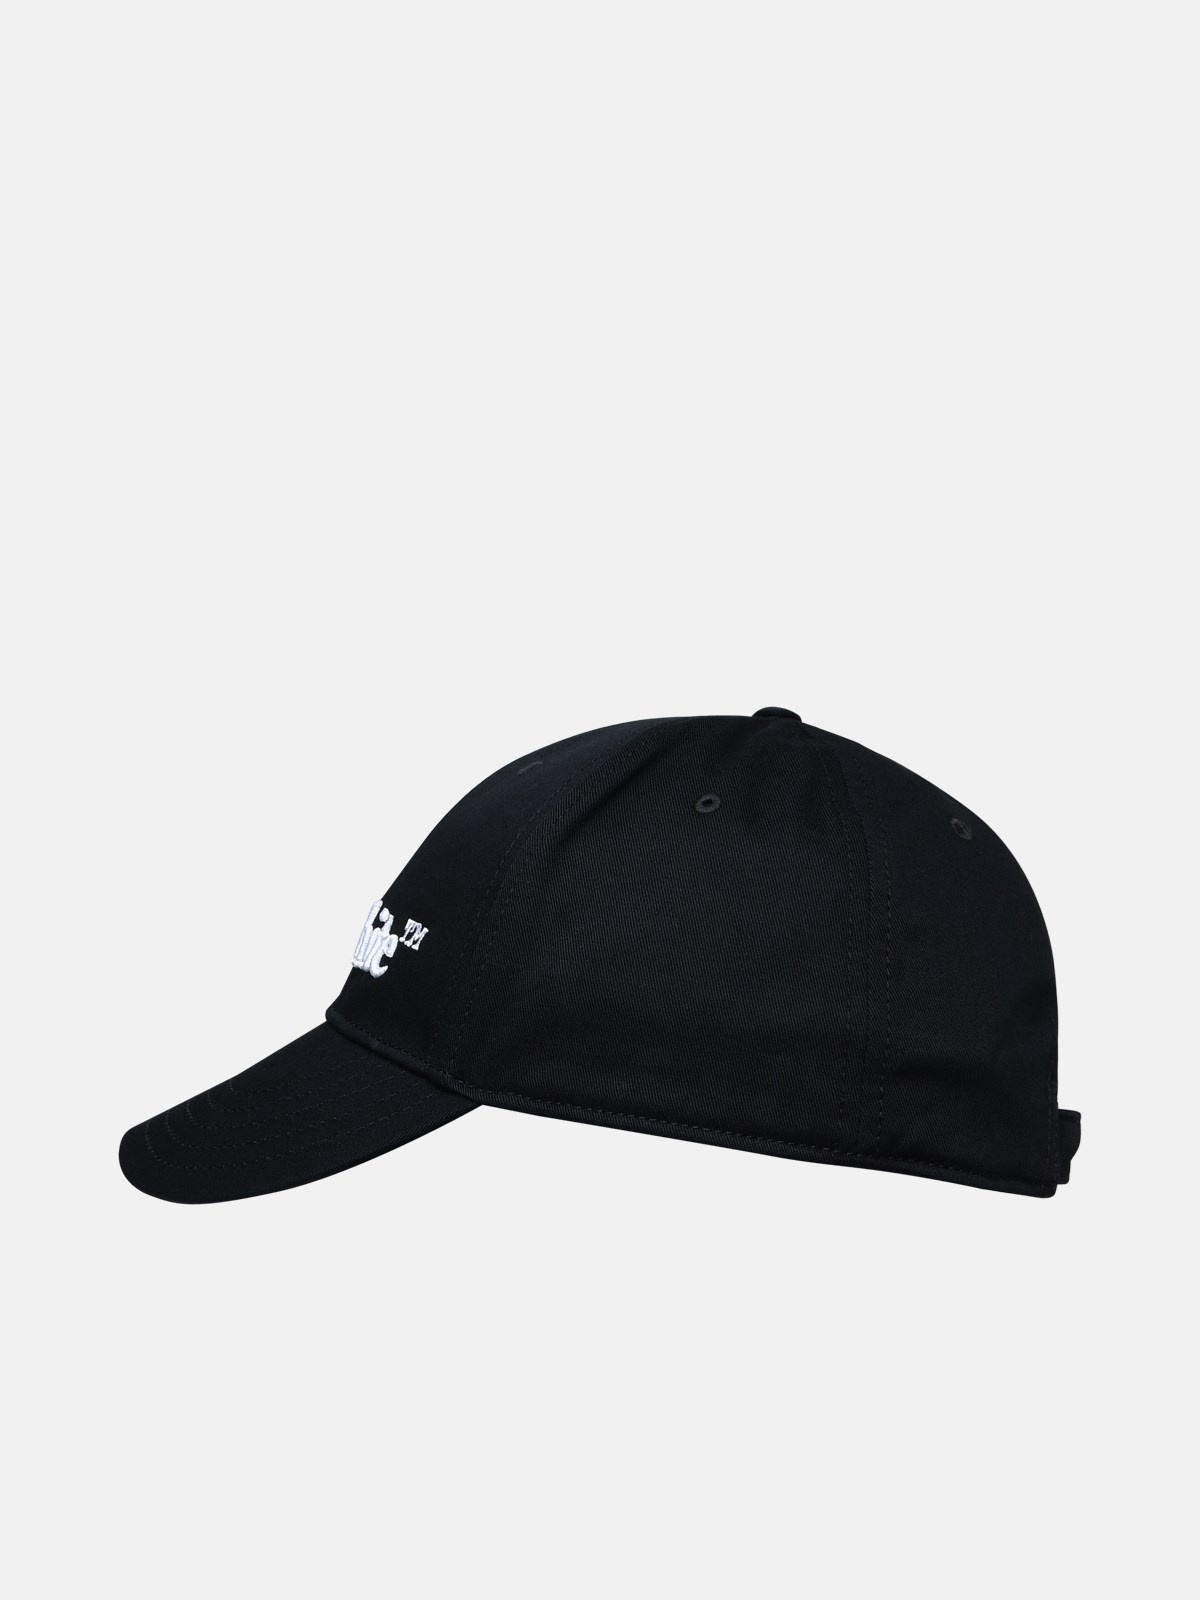 BLACK COTTON HAT - 2